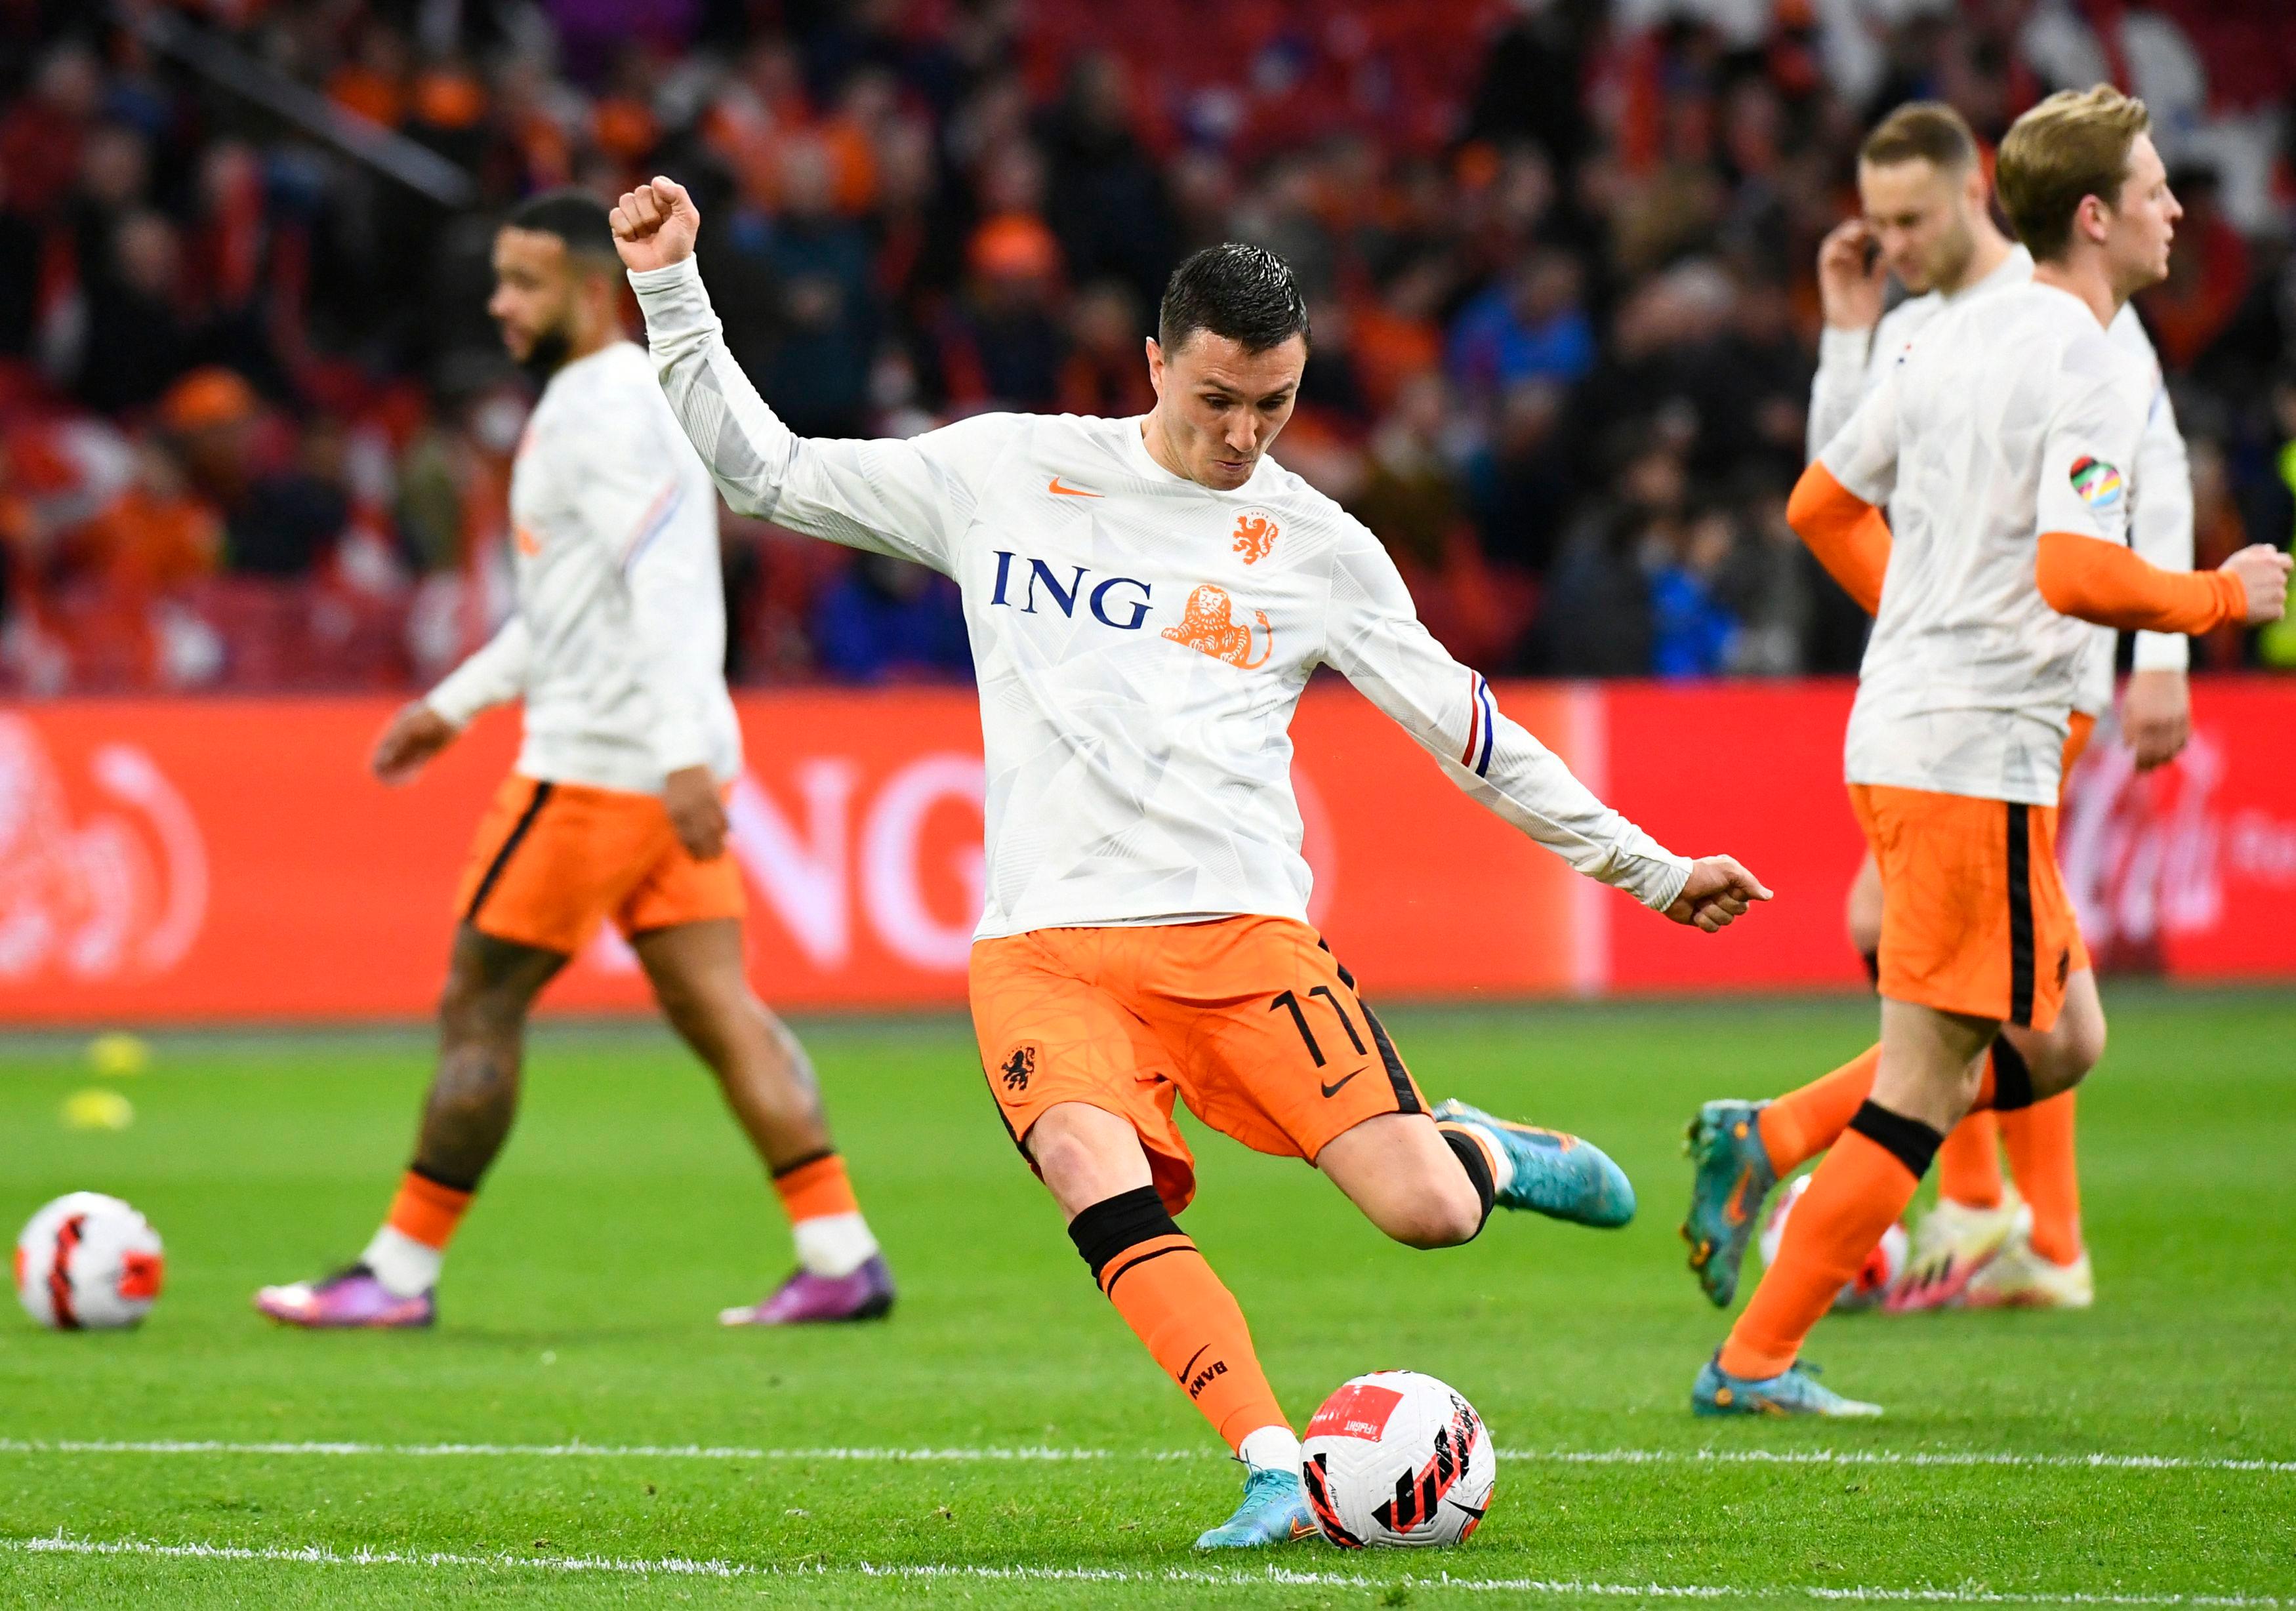 Liga holandesa de futebol 2020/21 arranca em 12 de setembro